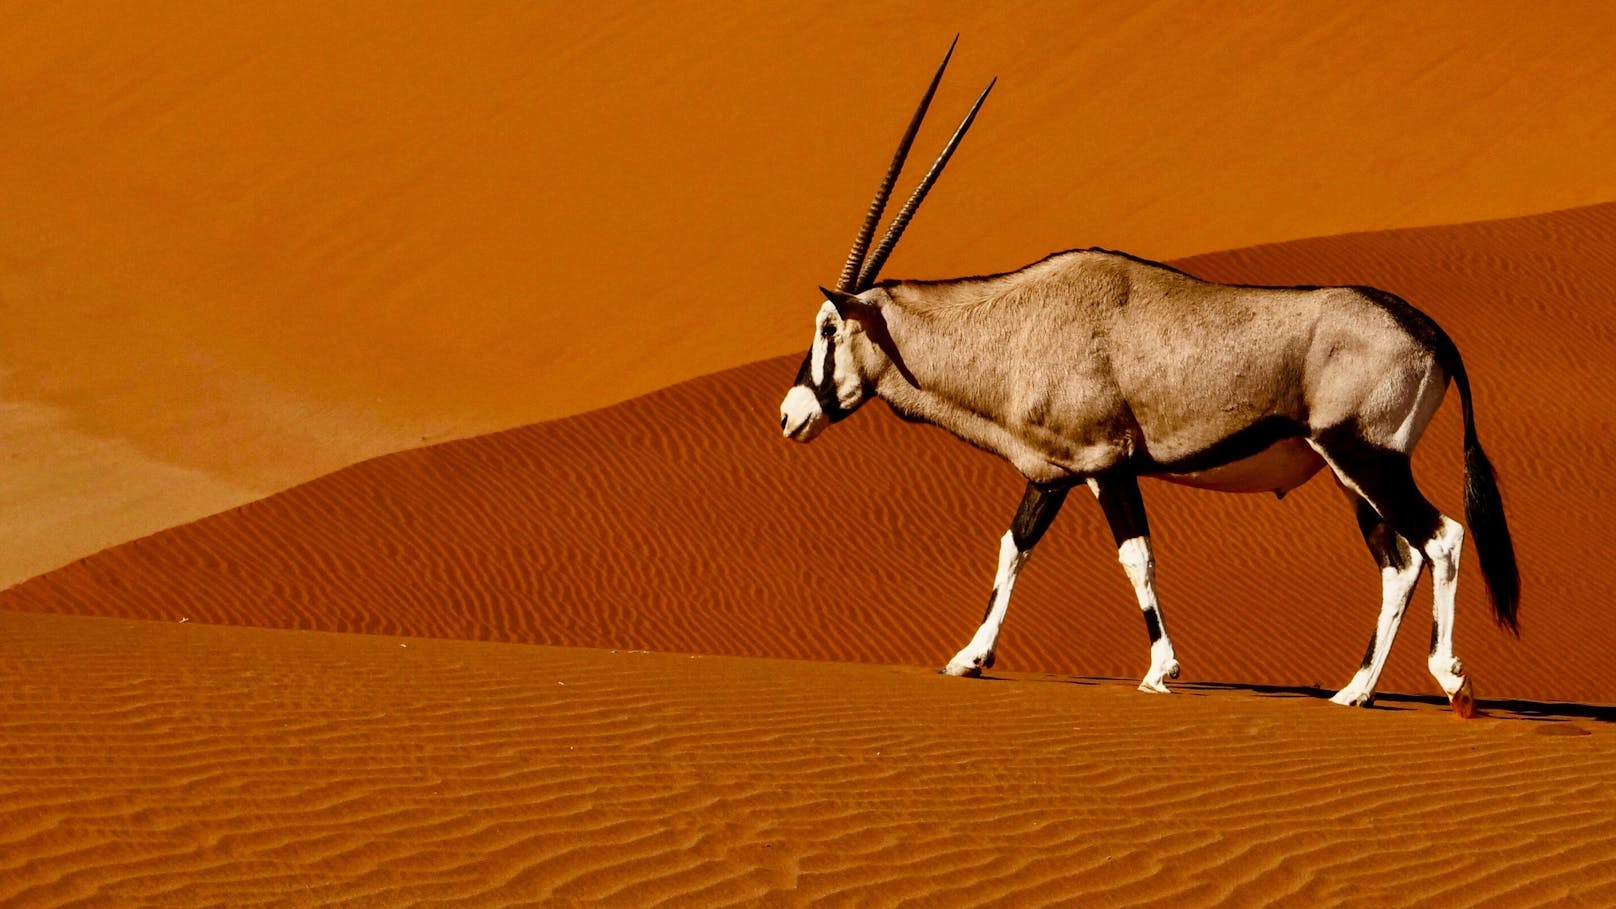 Kaum ein Lebewesen ist so gut an Hitze und Trockenheit angepasst wie der Spießbock, auch bekannt als Oryxantilope. Er kann seine Körpertemperatur auf bis zu 45 Grad Celsius ansteigen lassen, ohne dabei Schaden zu nehmen. 